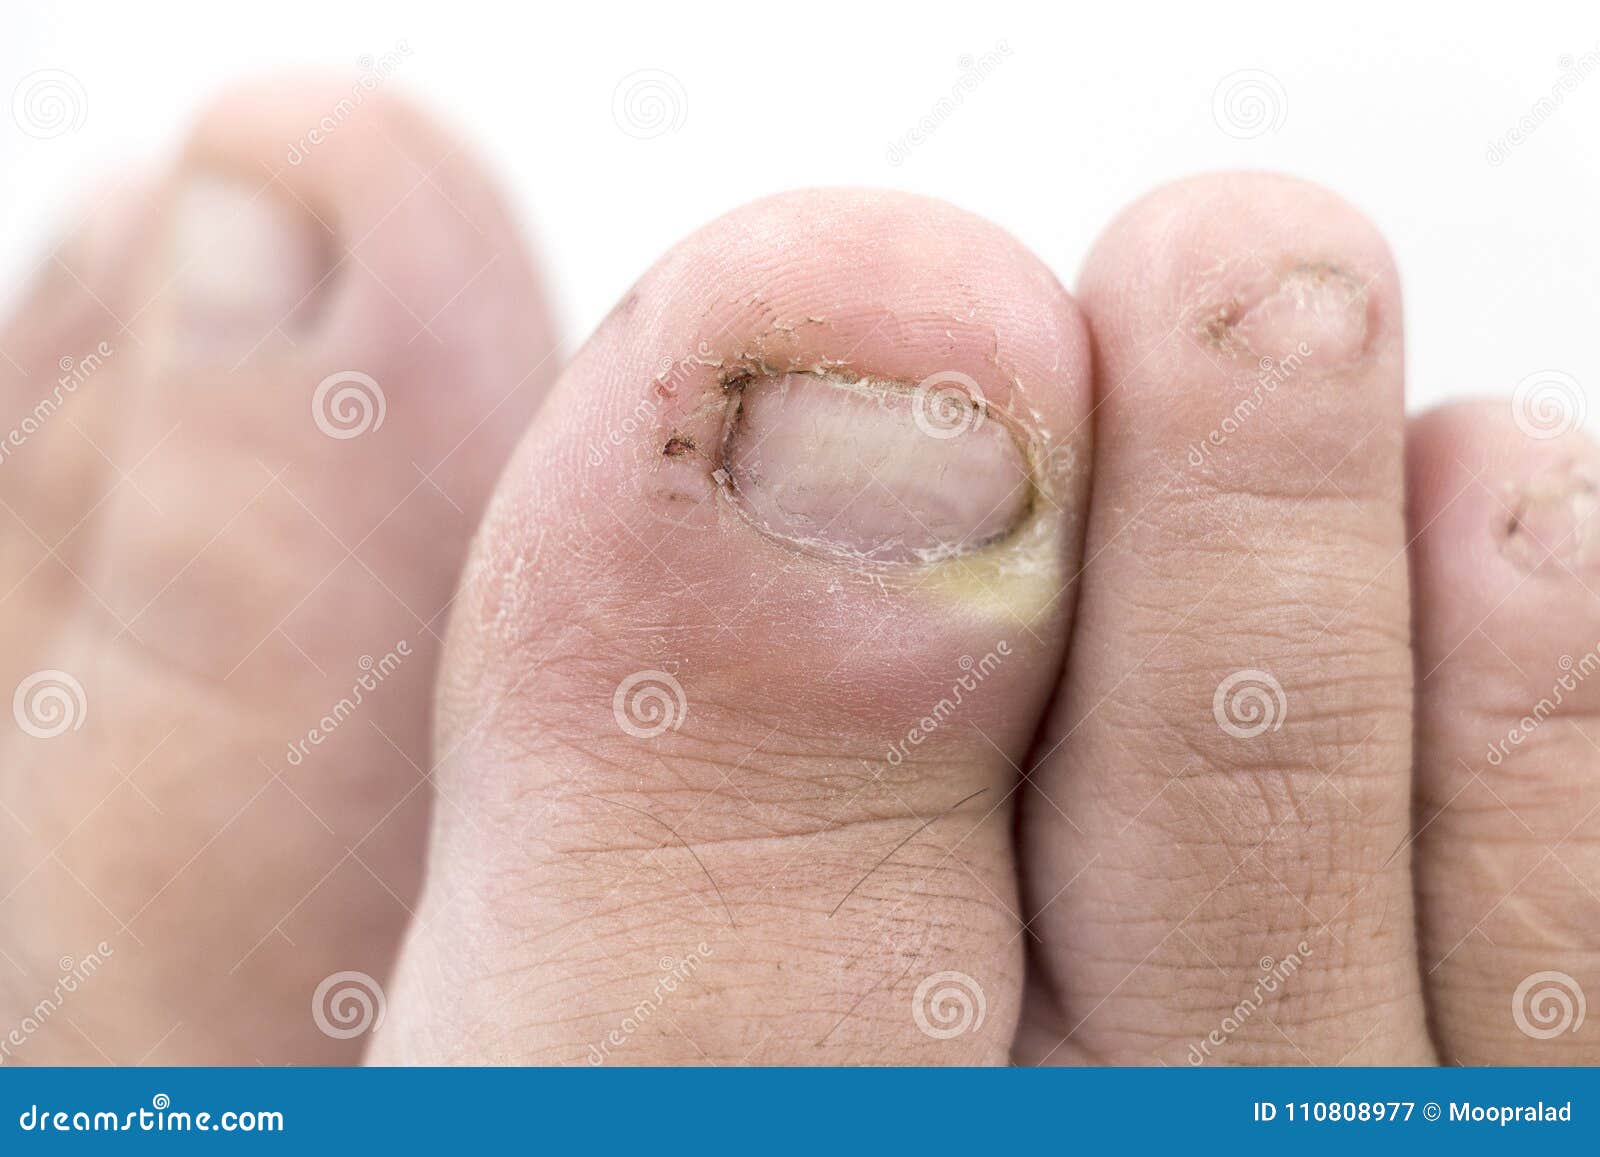 chiuda su dell infezione del fungo sulle unghie il piede dito con onychomy immagine stock immagine di medico barretta 110808977